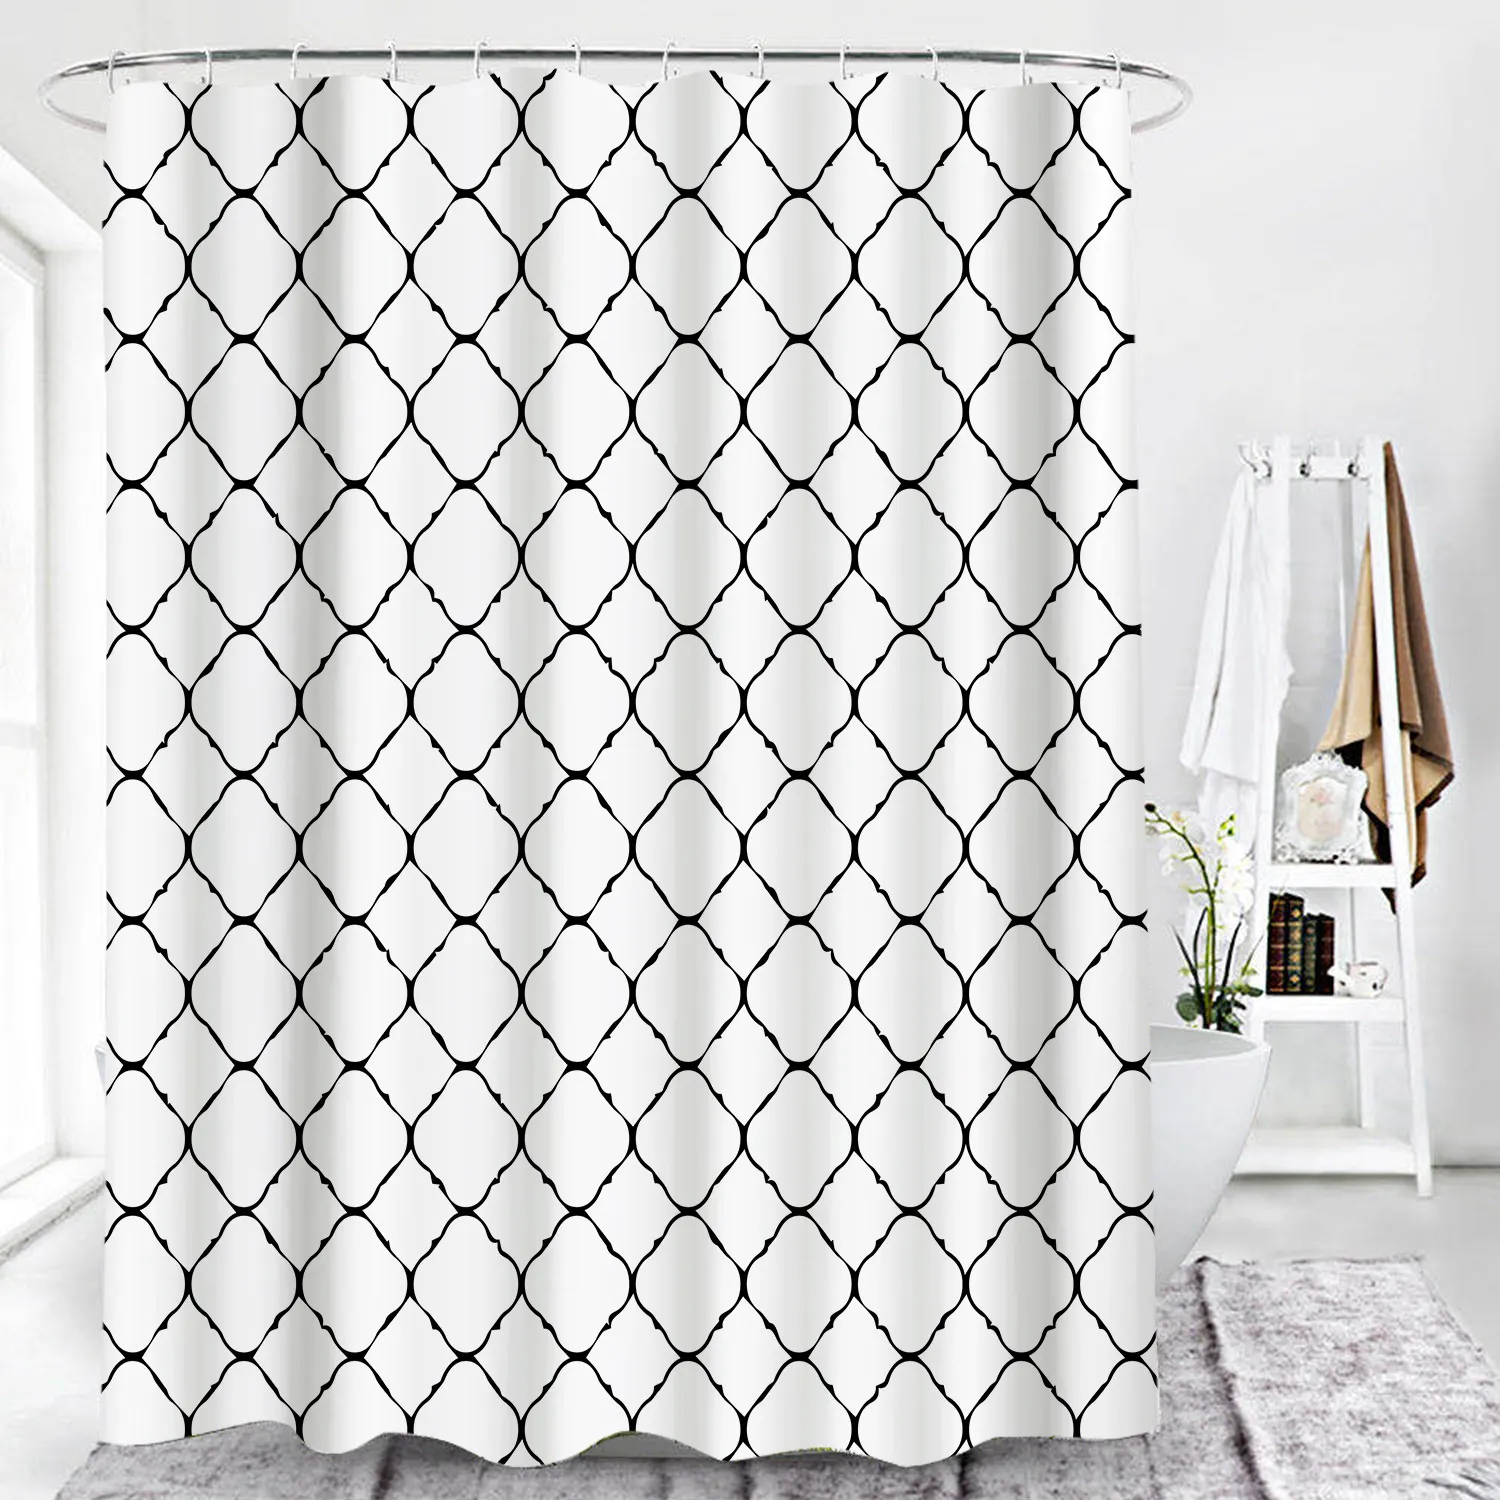 Czarno-biała Geometryczna zasłona prysznicowa Home łazienki Decor zasłony wodoodporna tkanina z hakiem